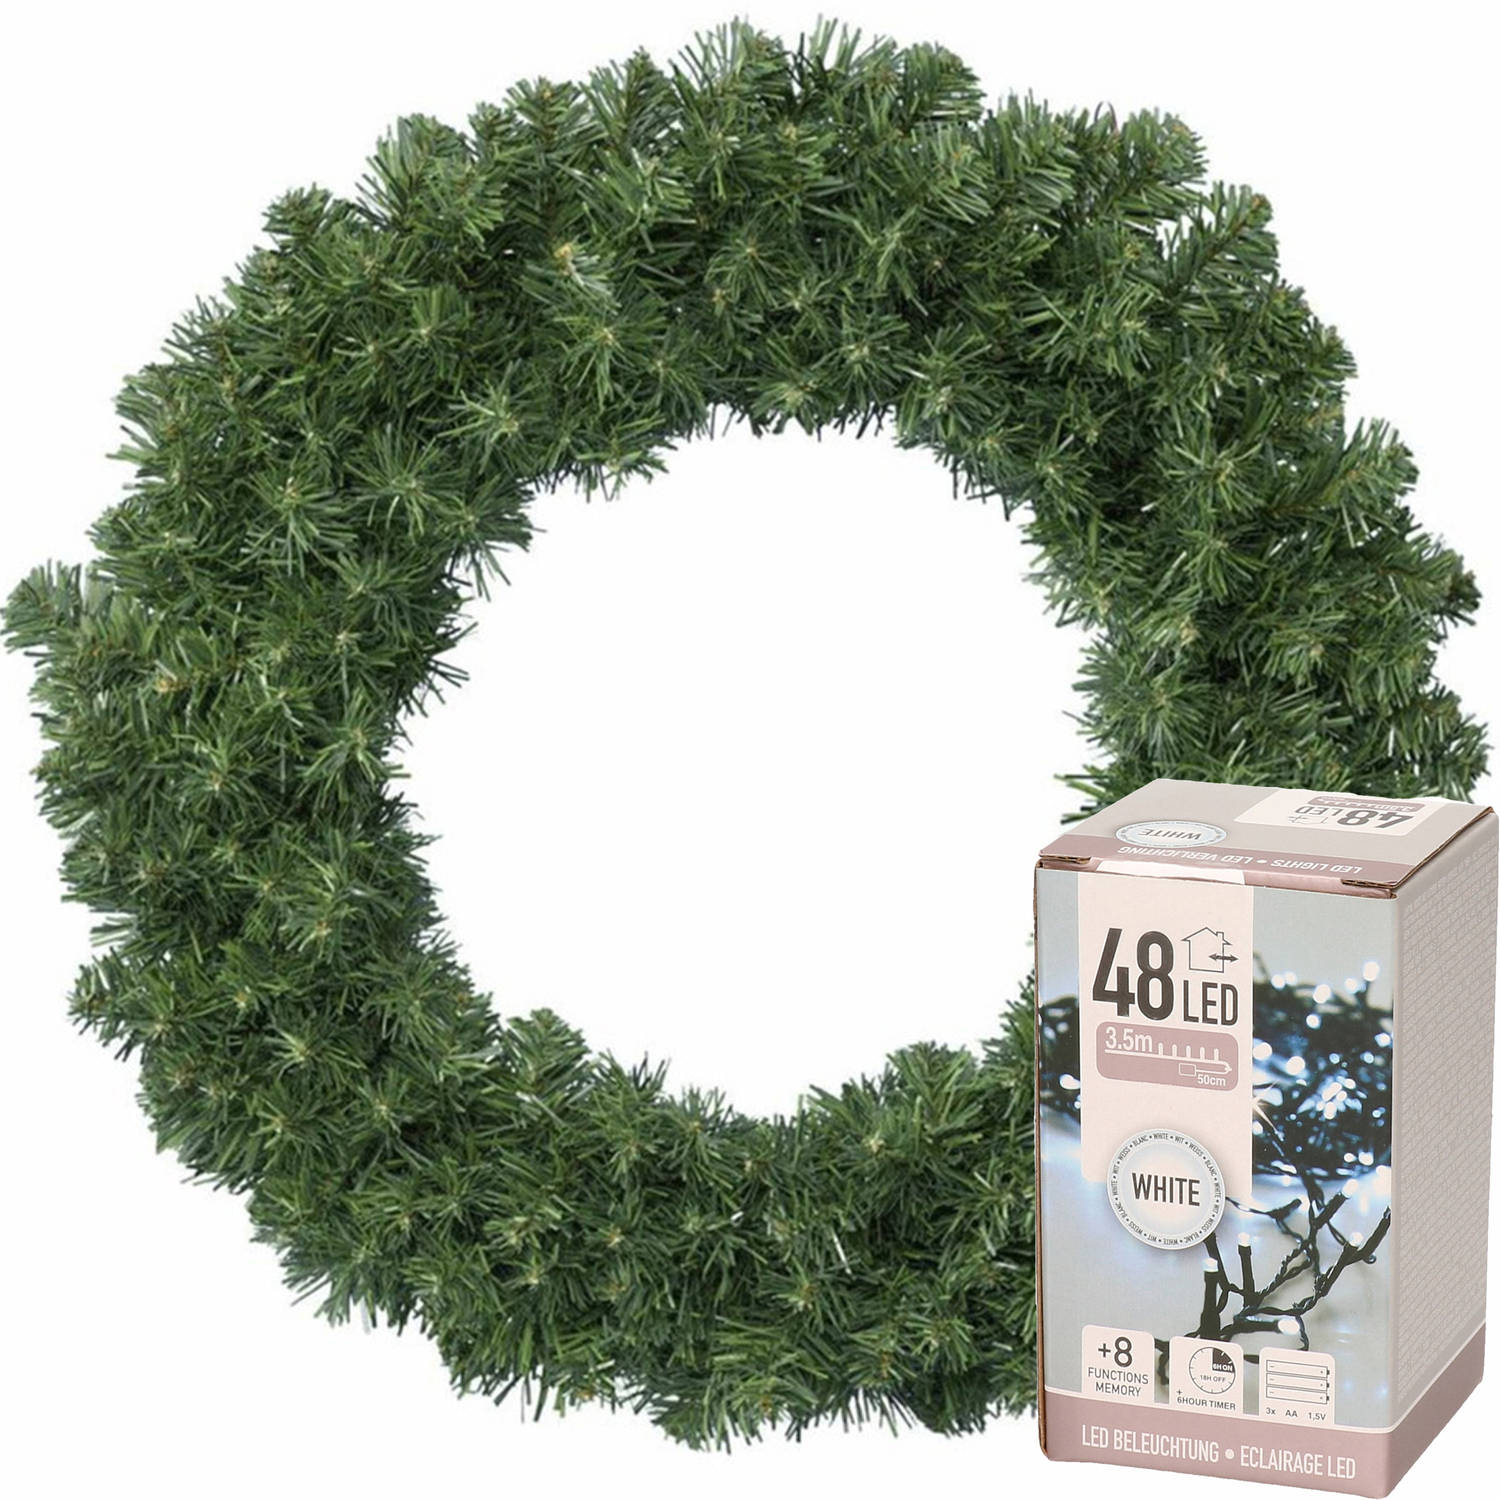 Kerstkrans groen 35 cm incl. verlichting helder wit 4m Kerstkransen